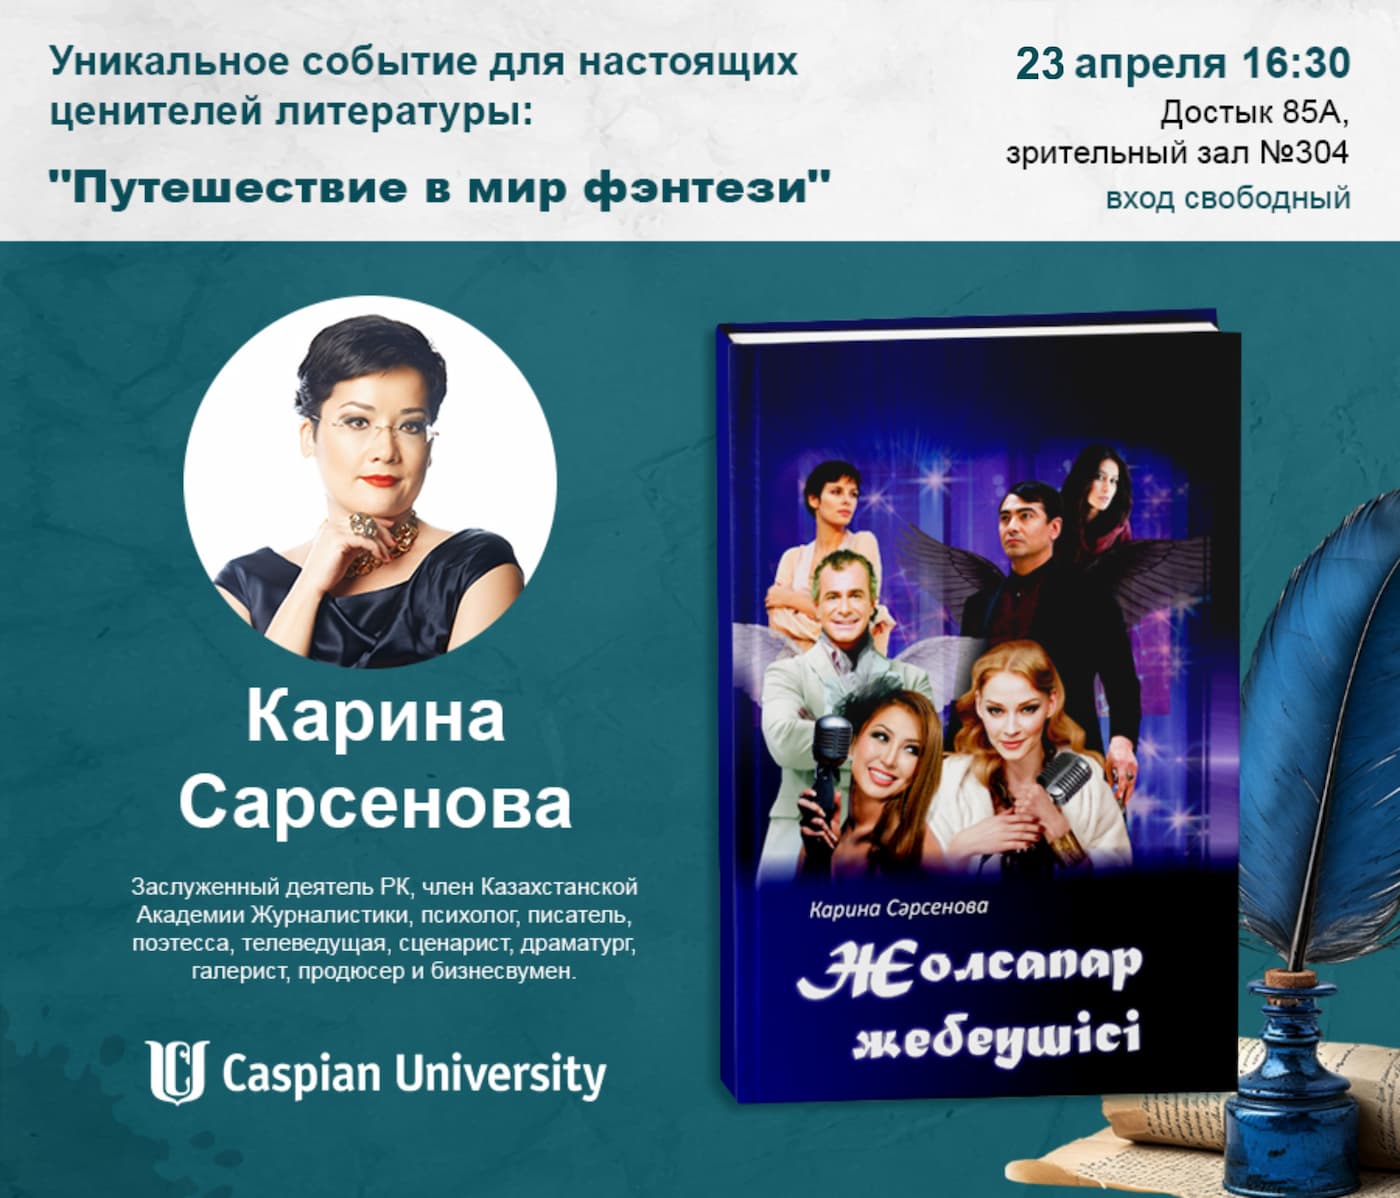 Встреча с автором книги «Хранители пути» Кариной Сарсеновой состоится 23 апреля в Алматы